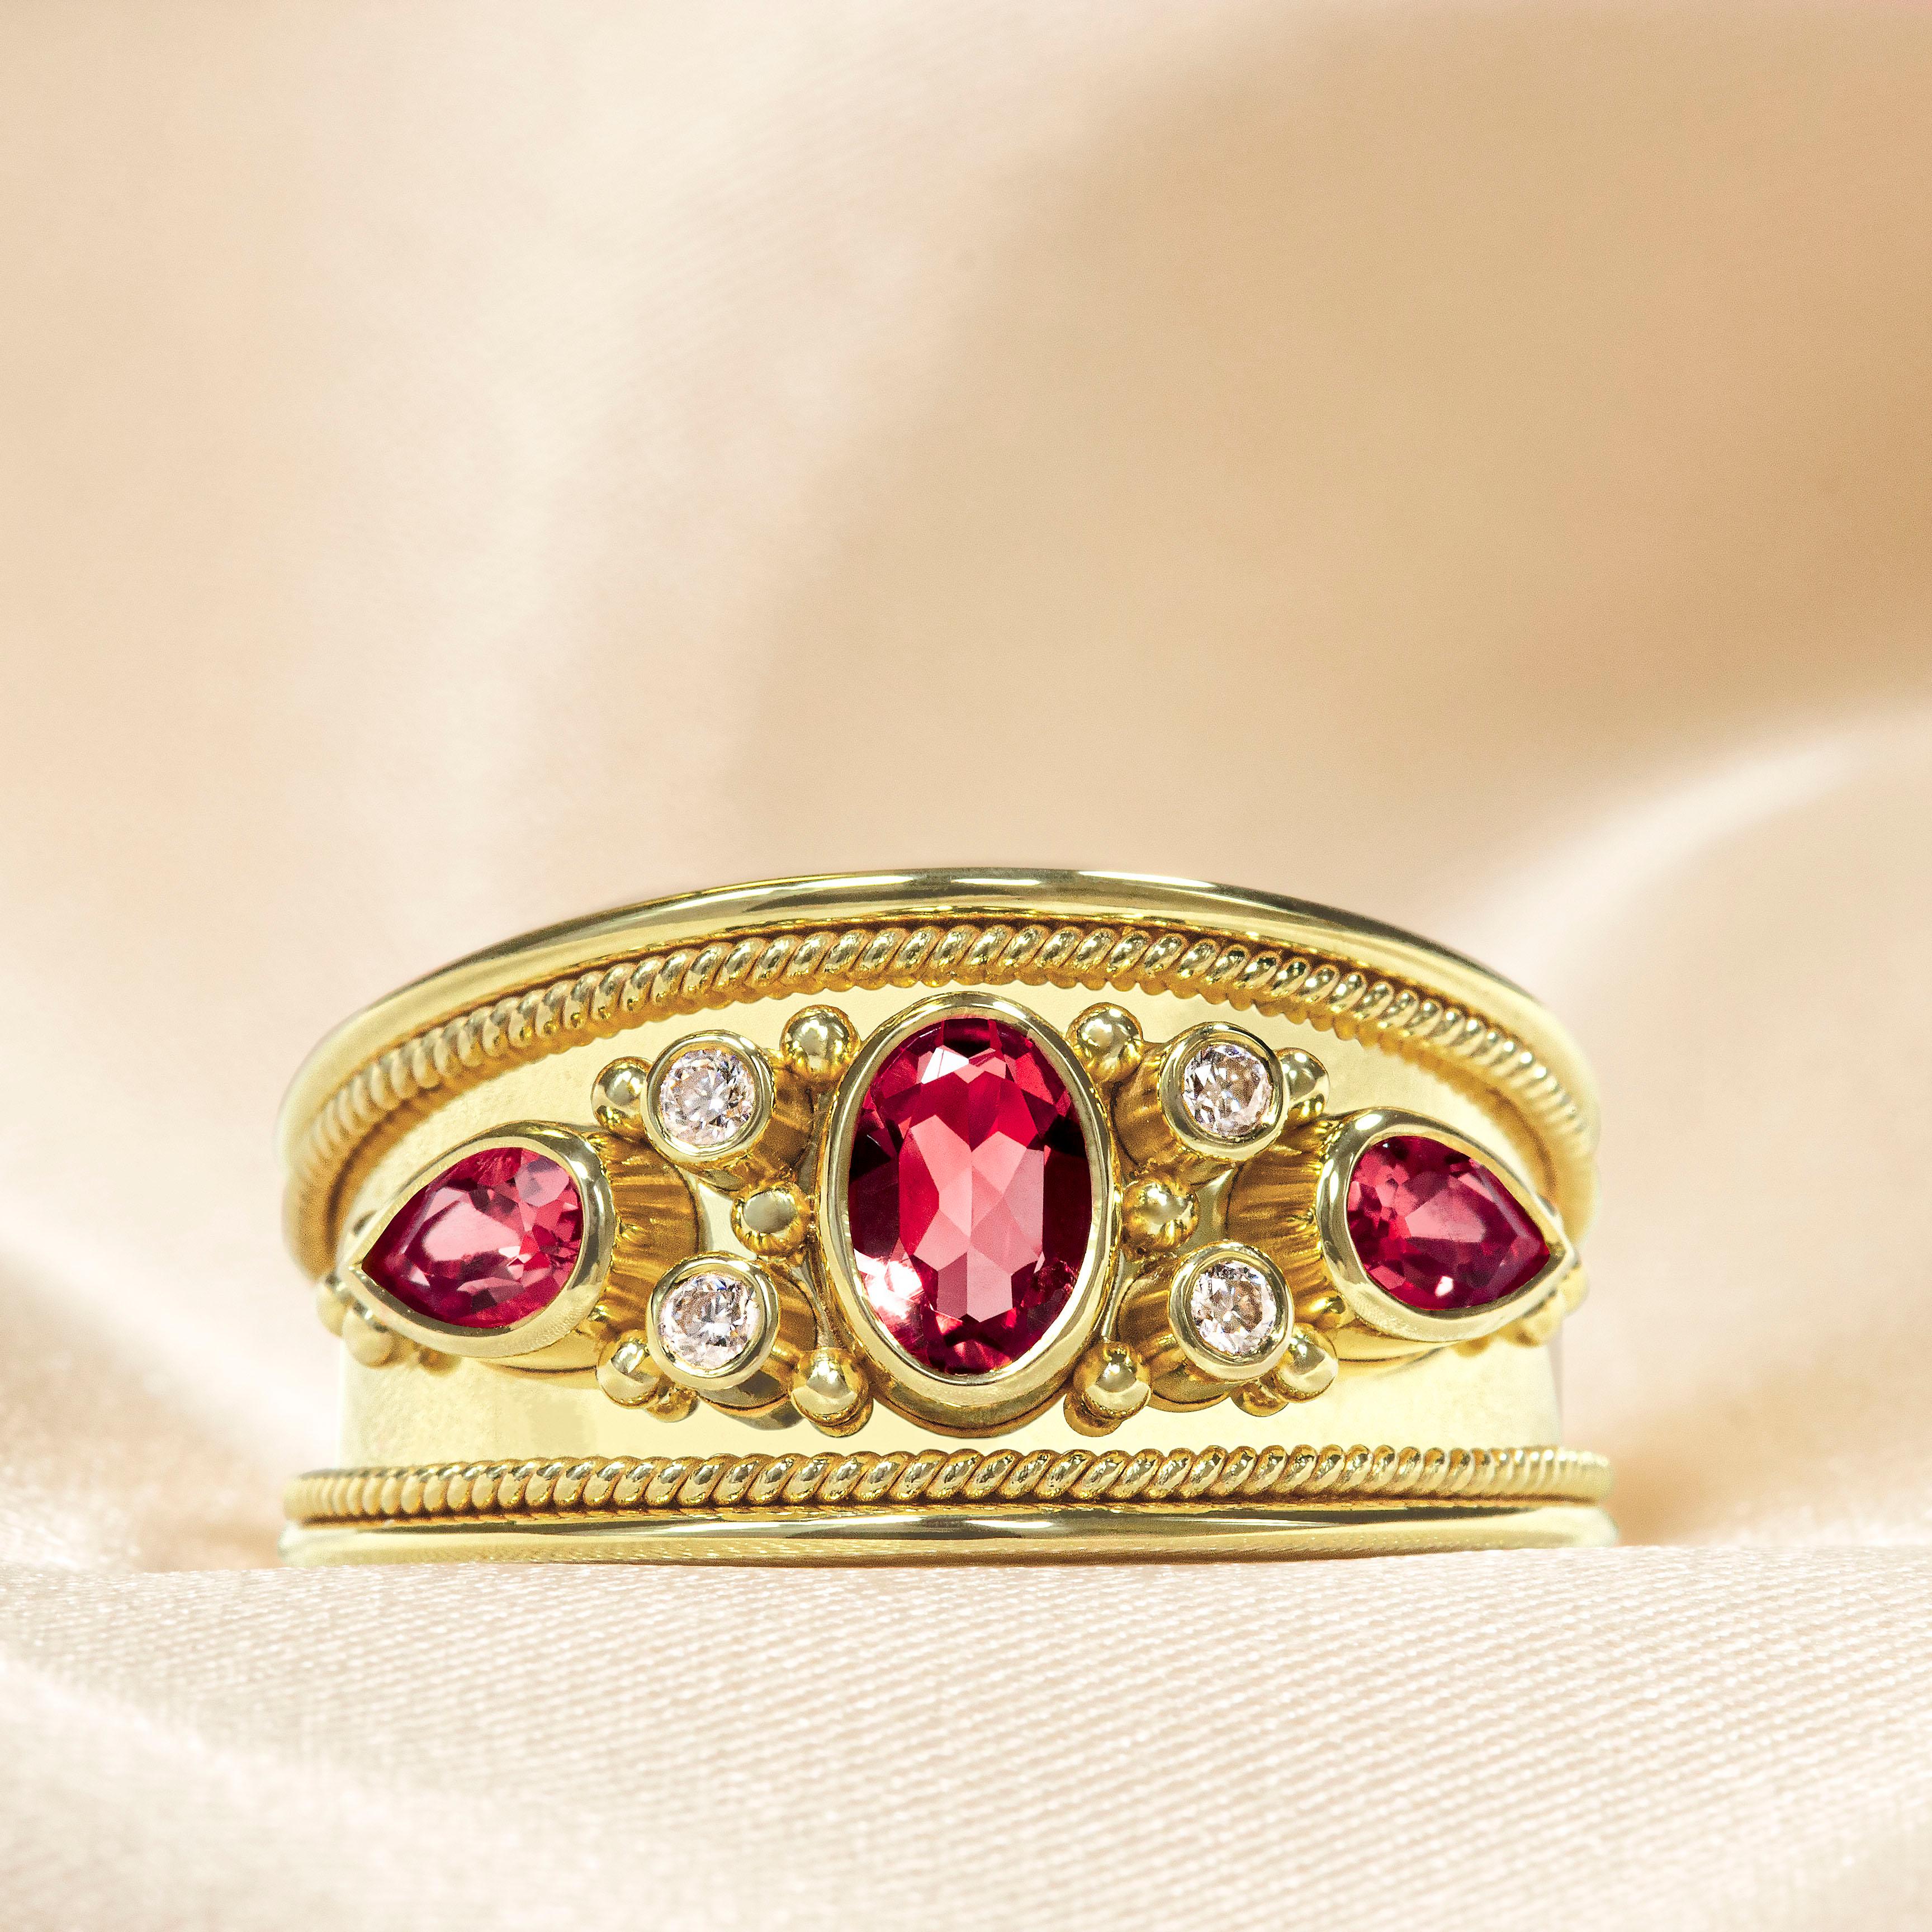 Eleganz steht im Mittelpunkt unseres fesselnden Goldrings, in dem feurige Rubine, Brillanten und glänzendes Finish in harmonischem Glanz aufeinandertreffen. Dieses exquisite Stück ist mehr als nur ein Schmuckstück; es ist ein Statement von zeitlosem